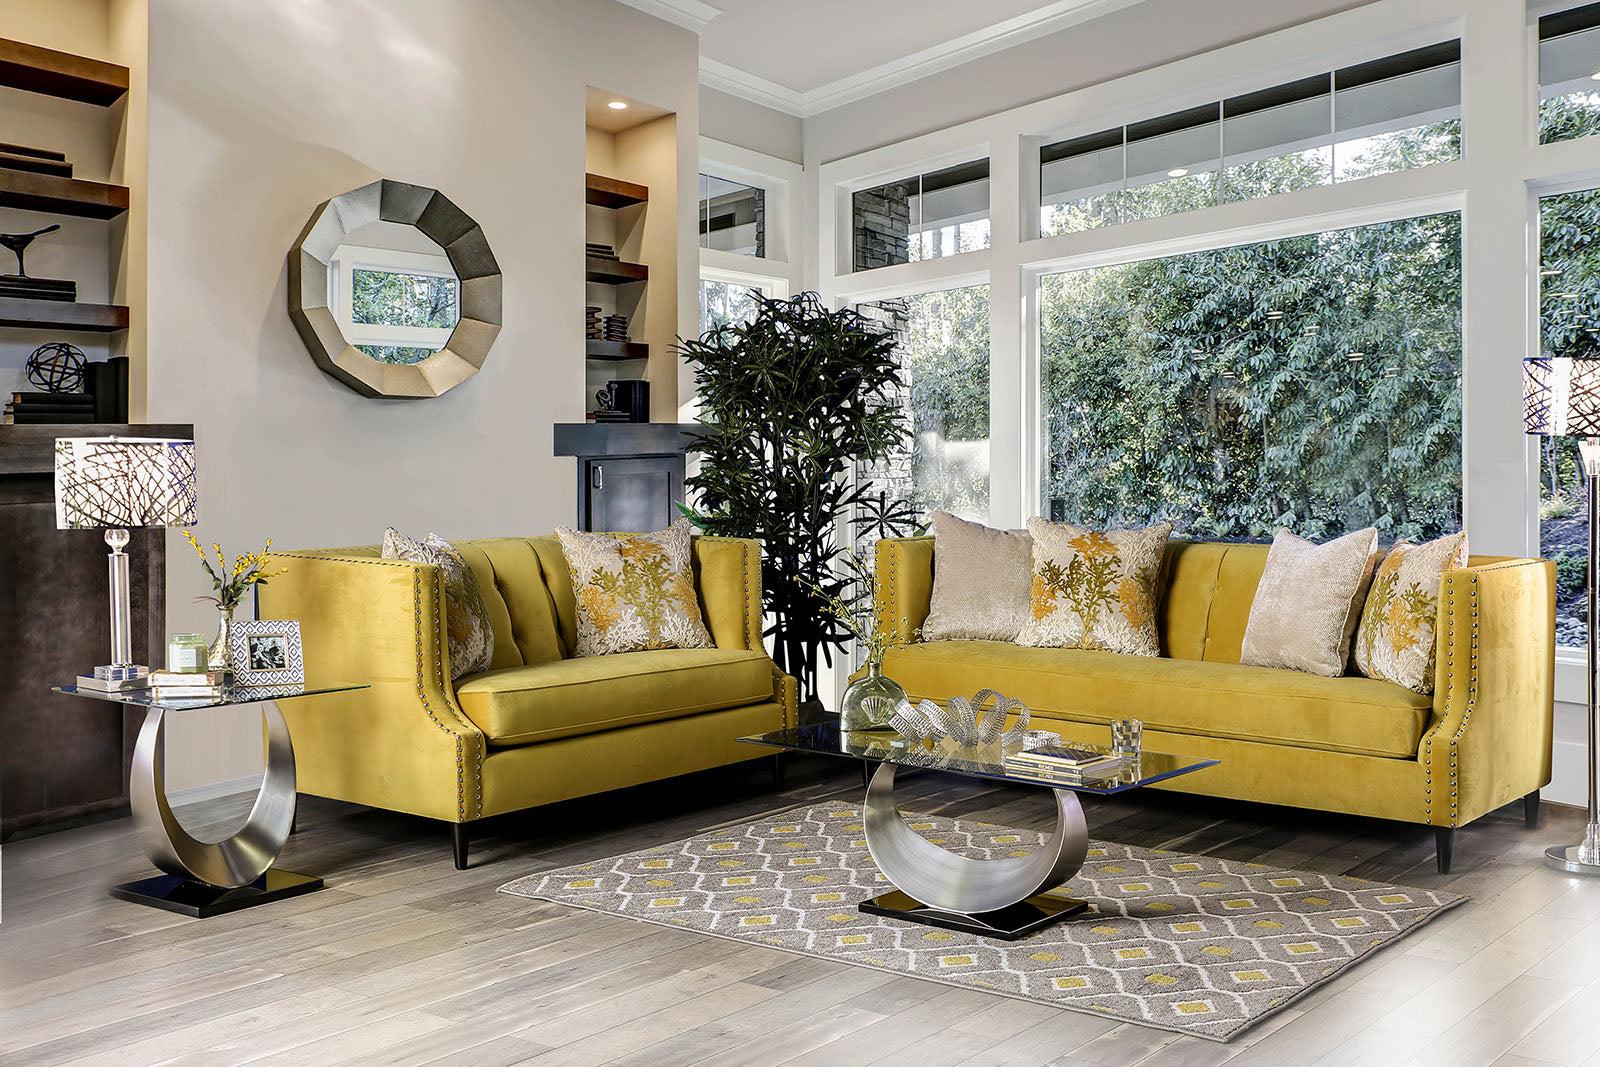 

    
Royal Yellow Microfiber Sofa TEGAN SM2216-SF Furniture of America Transitional
